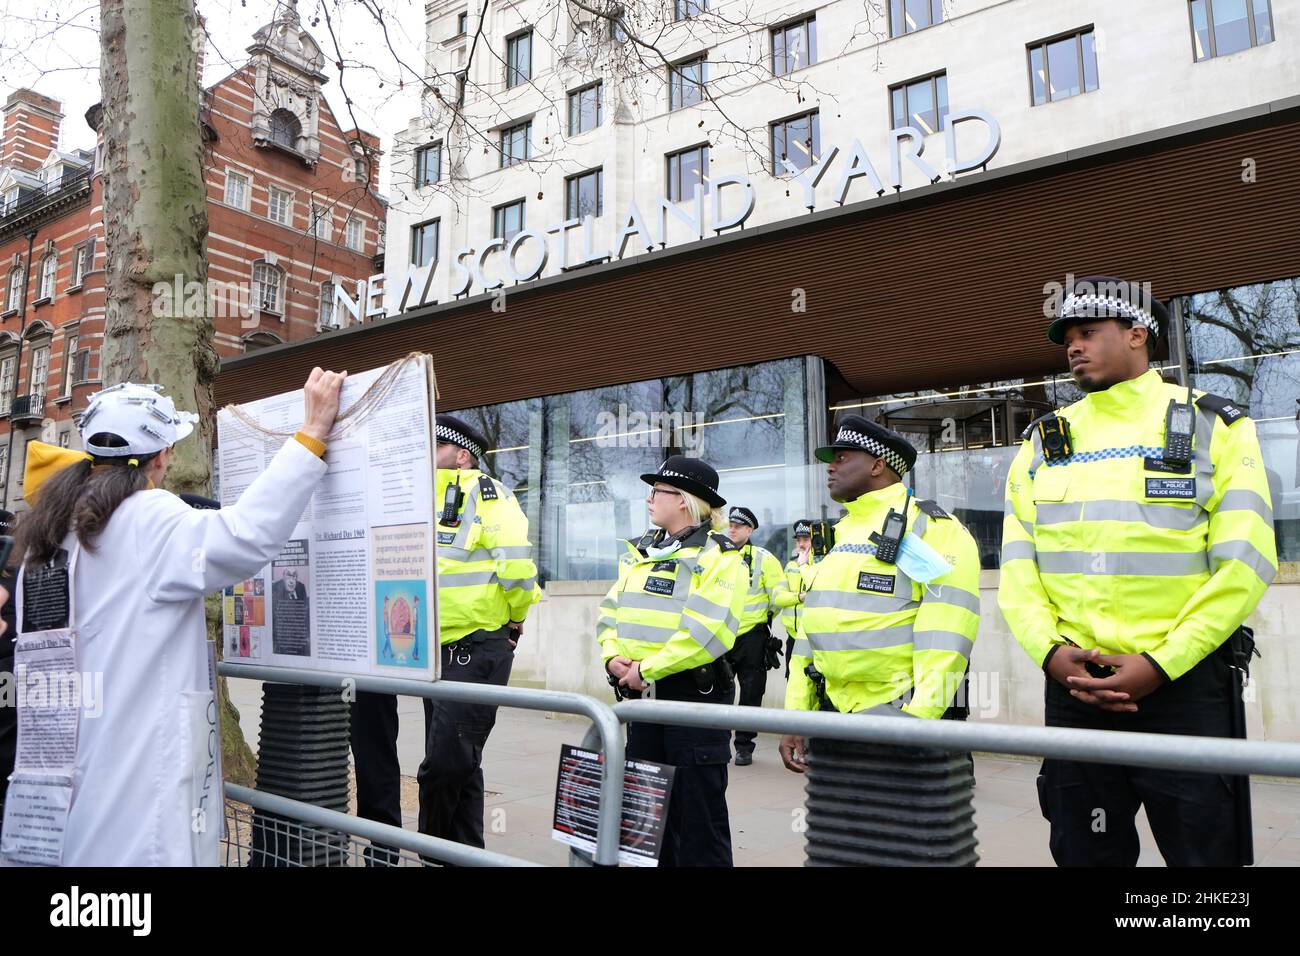 Londres, Royaume-Uni. Des policiers rencontrés se tiennent devant New Scotland Yard comme un manifestant avec un écriteau à l'aide de barrières métalliques. Banque D'Images